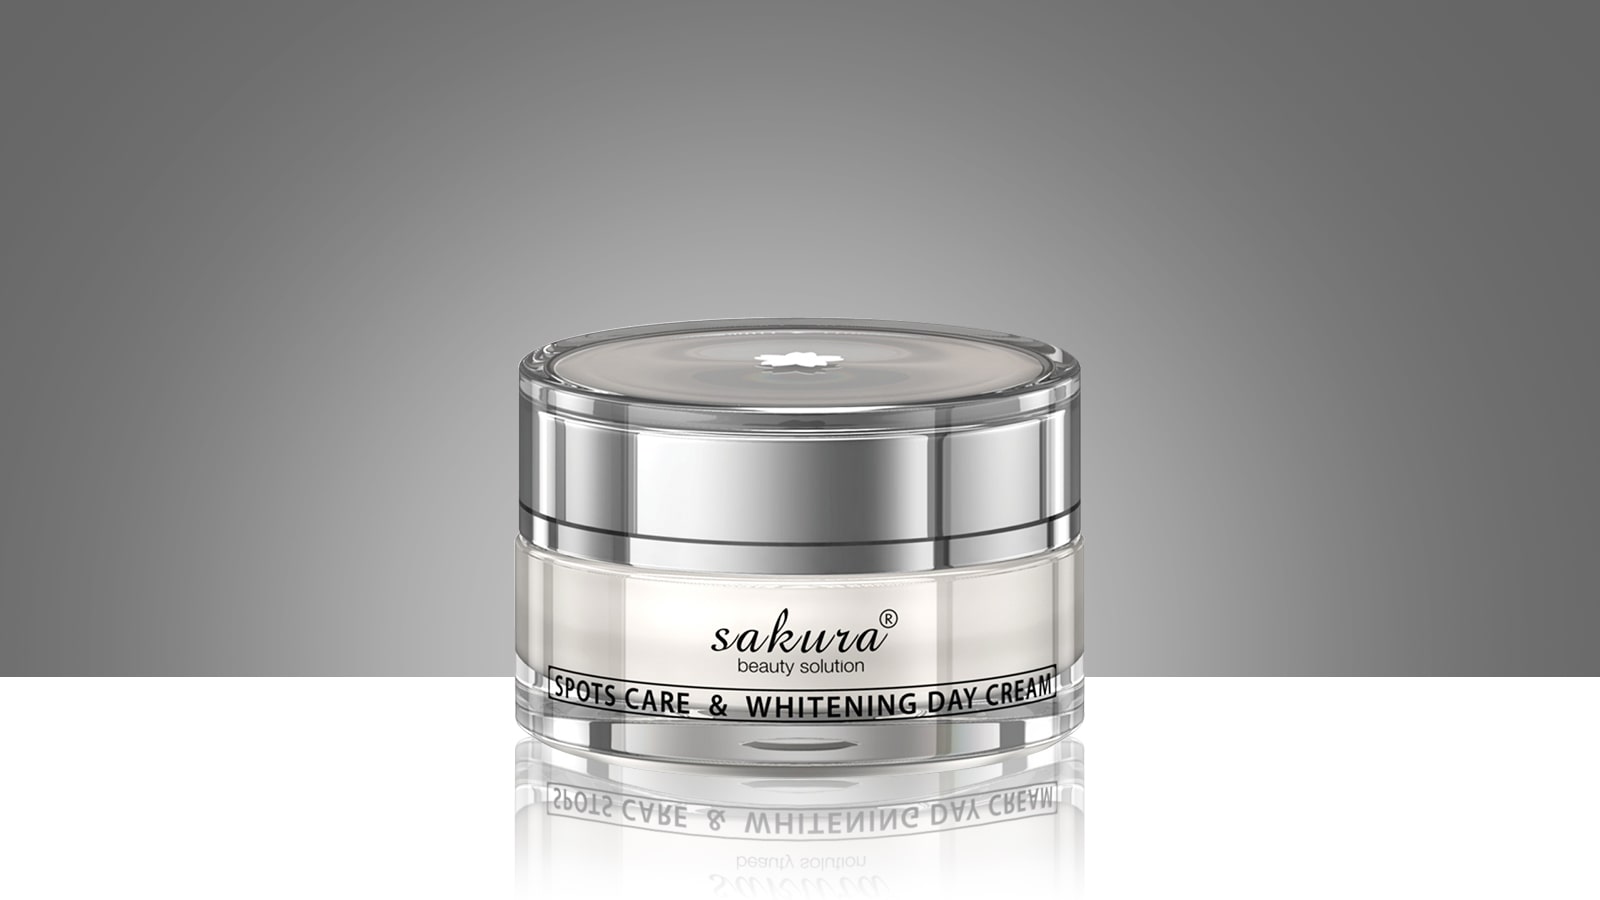 Sakura Spots Care & Whitening day Cream là một trong những sản phẩm nằm trong top 10 kem dưỡng trắng da mặt tốt nhất